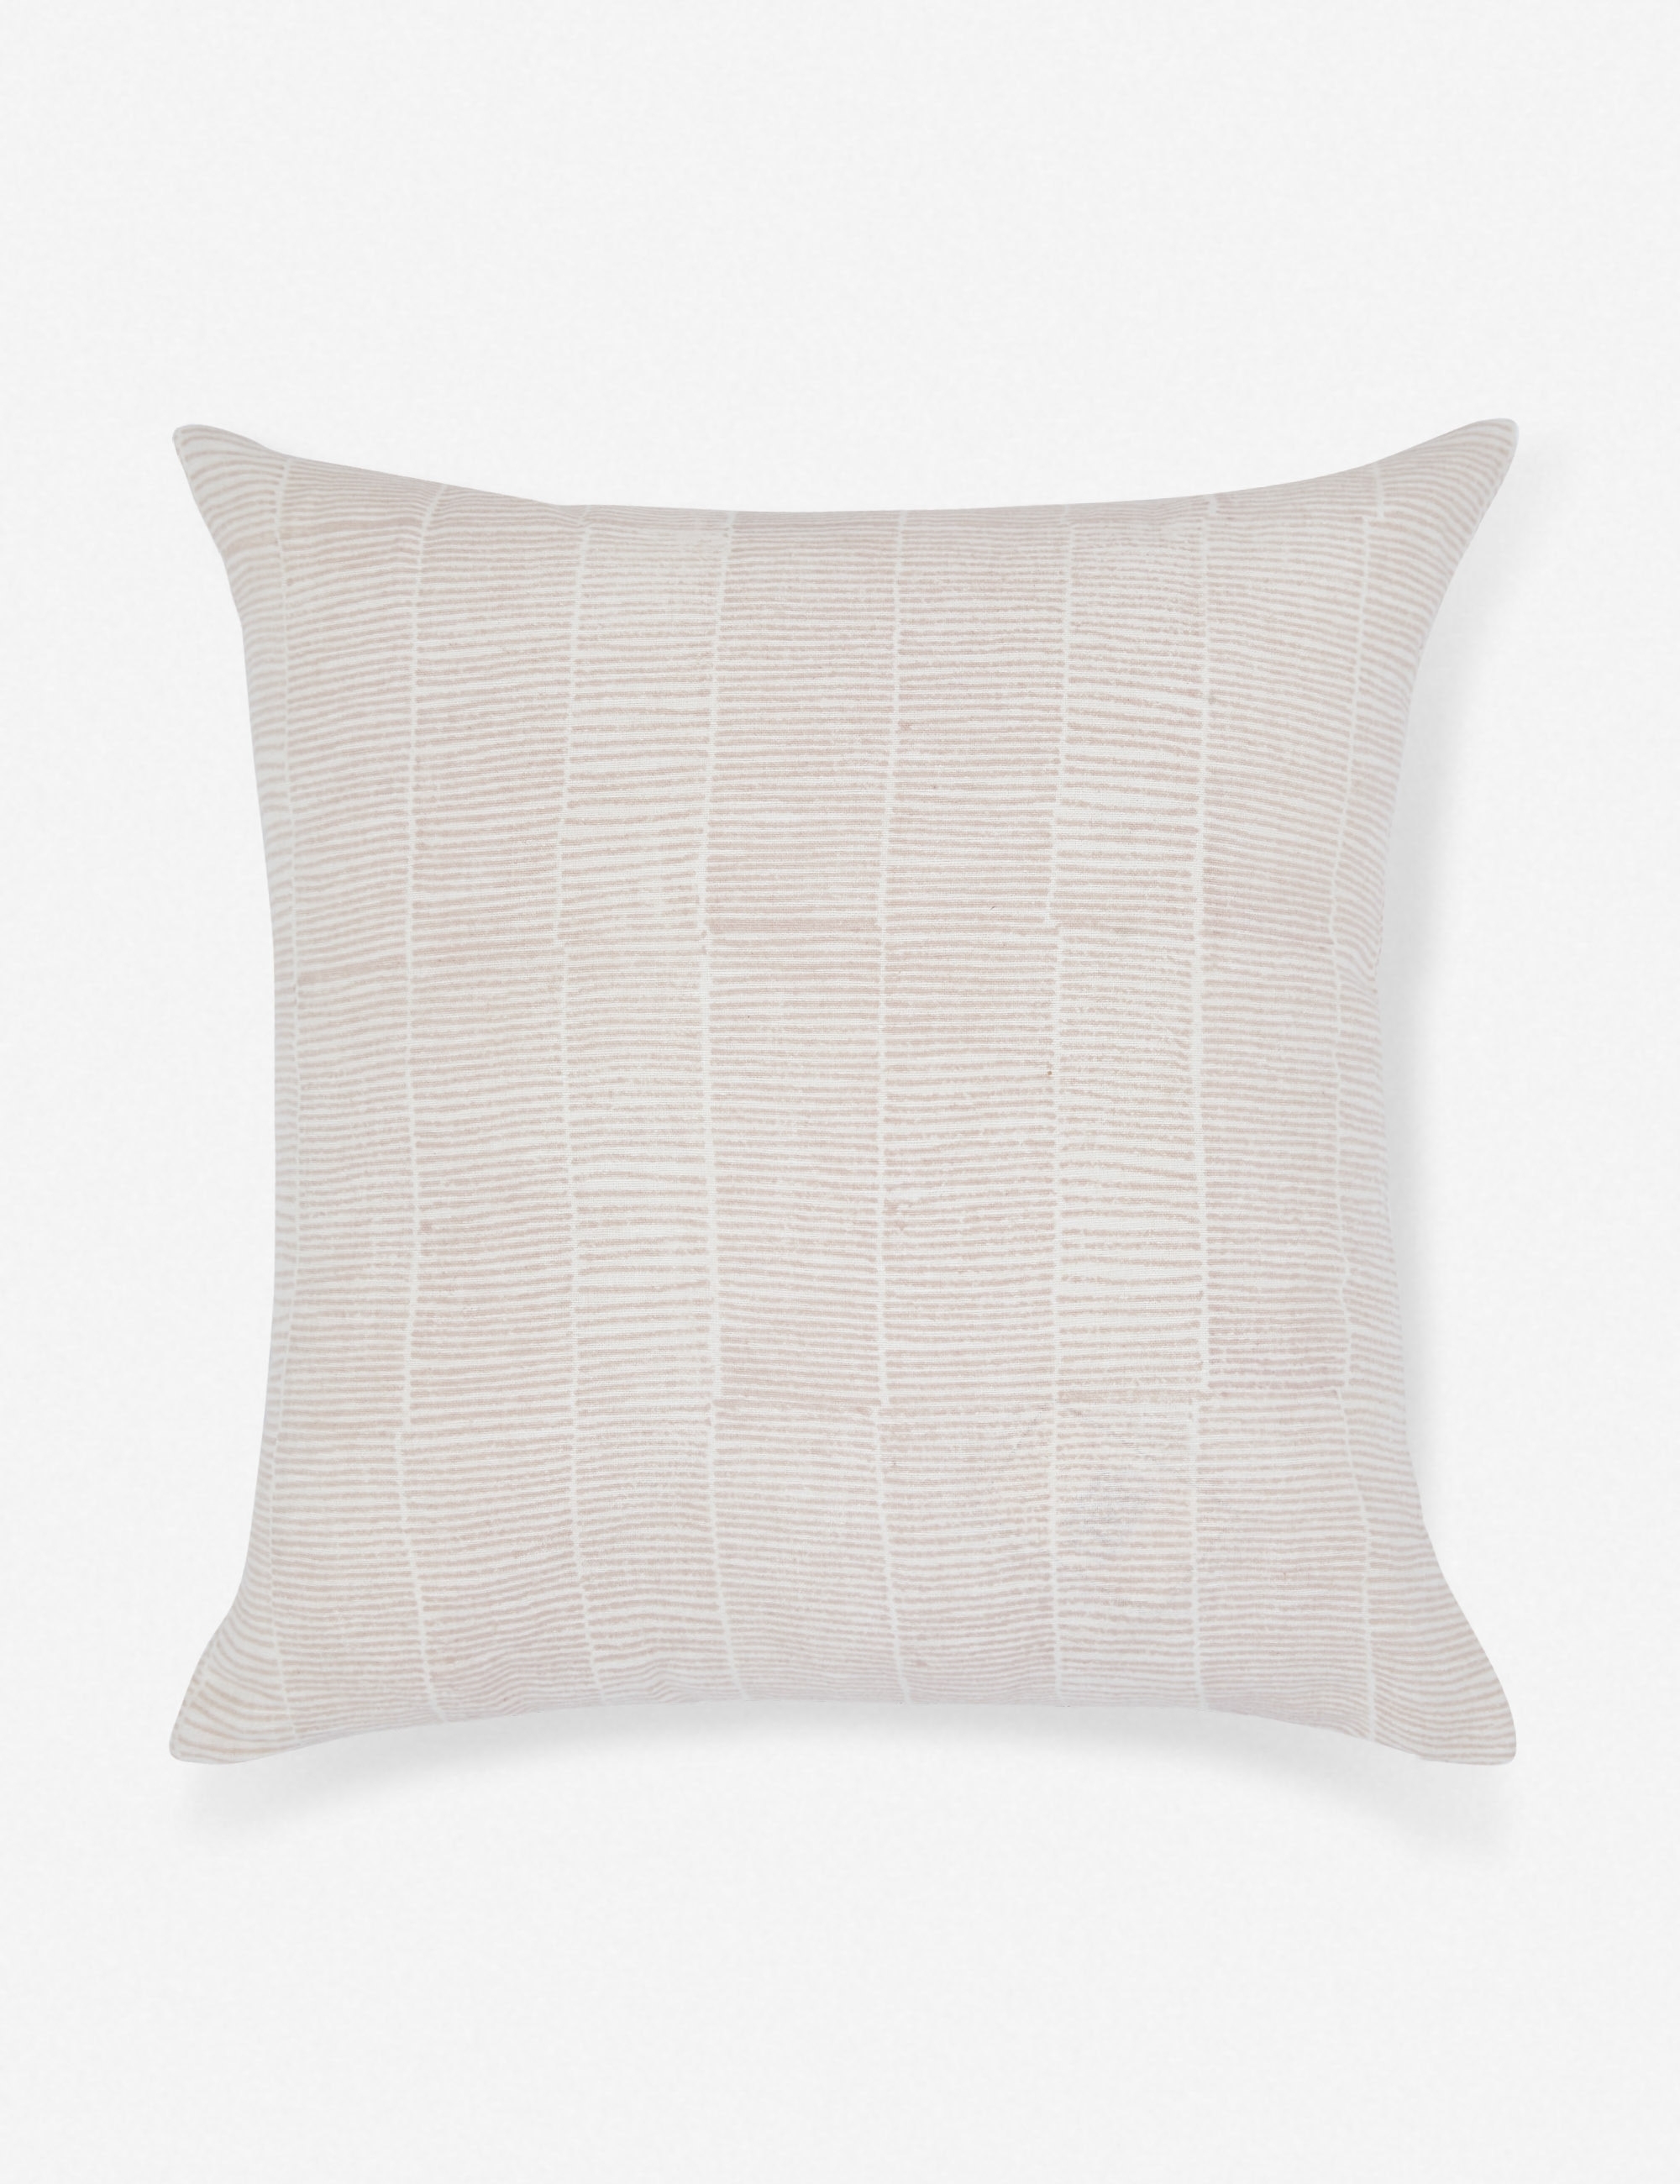 Claudette Pillow, Blush - Image 0